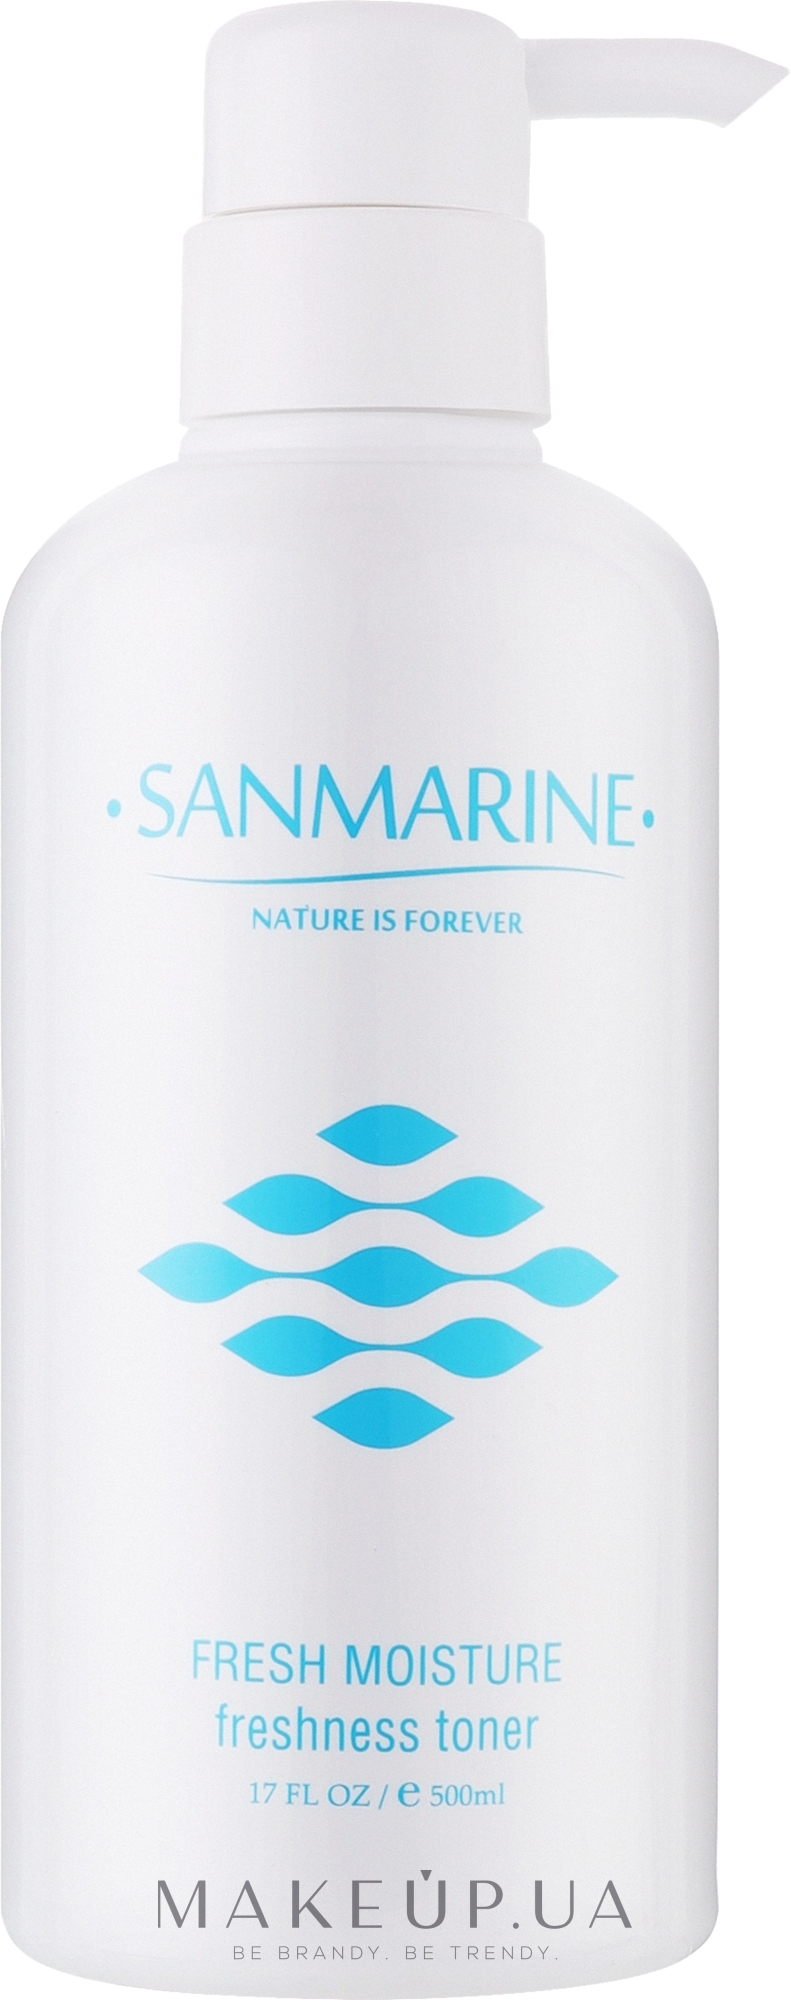 Освіжаючий тонер для обличчя - Sanmarine Fresh Moisture Freshness Toner — фото 500ml